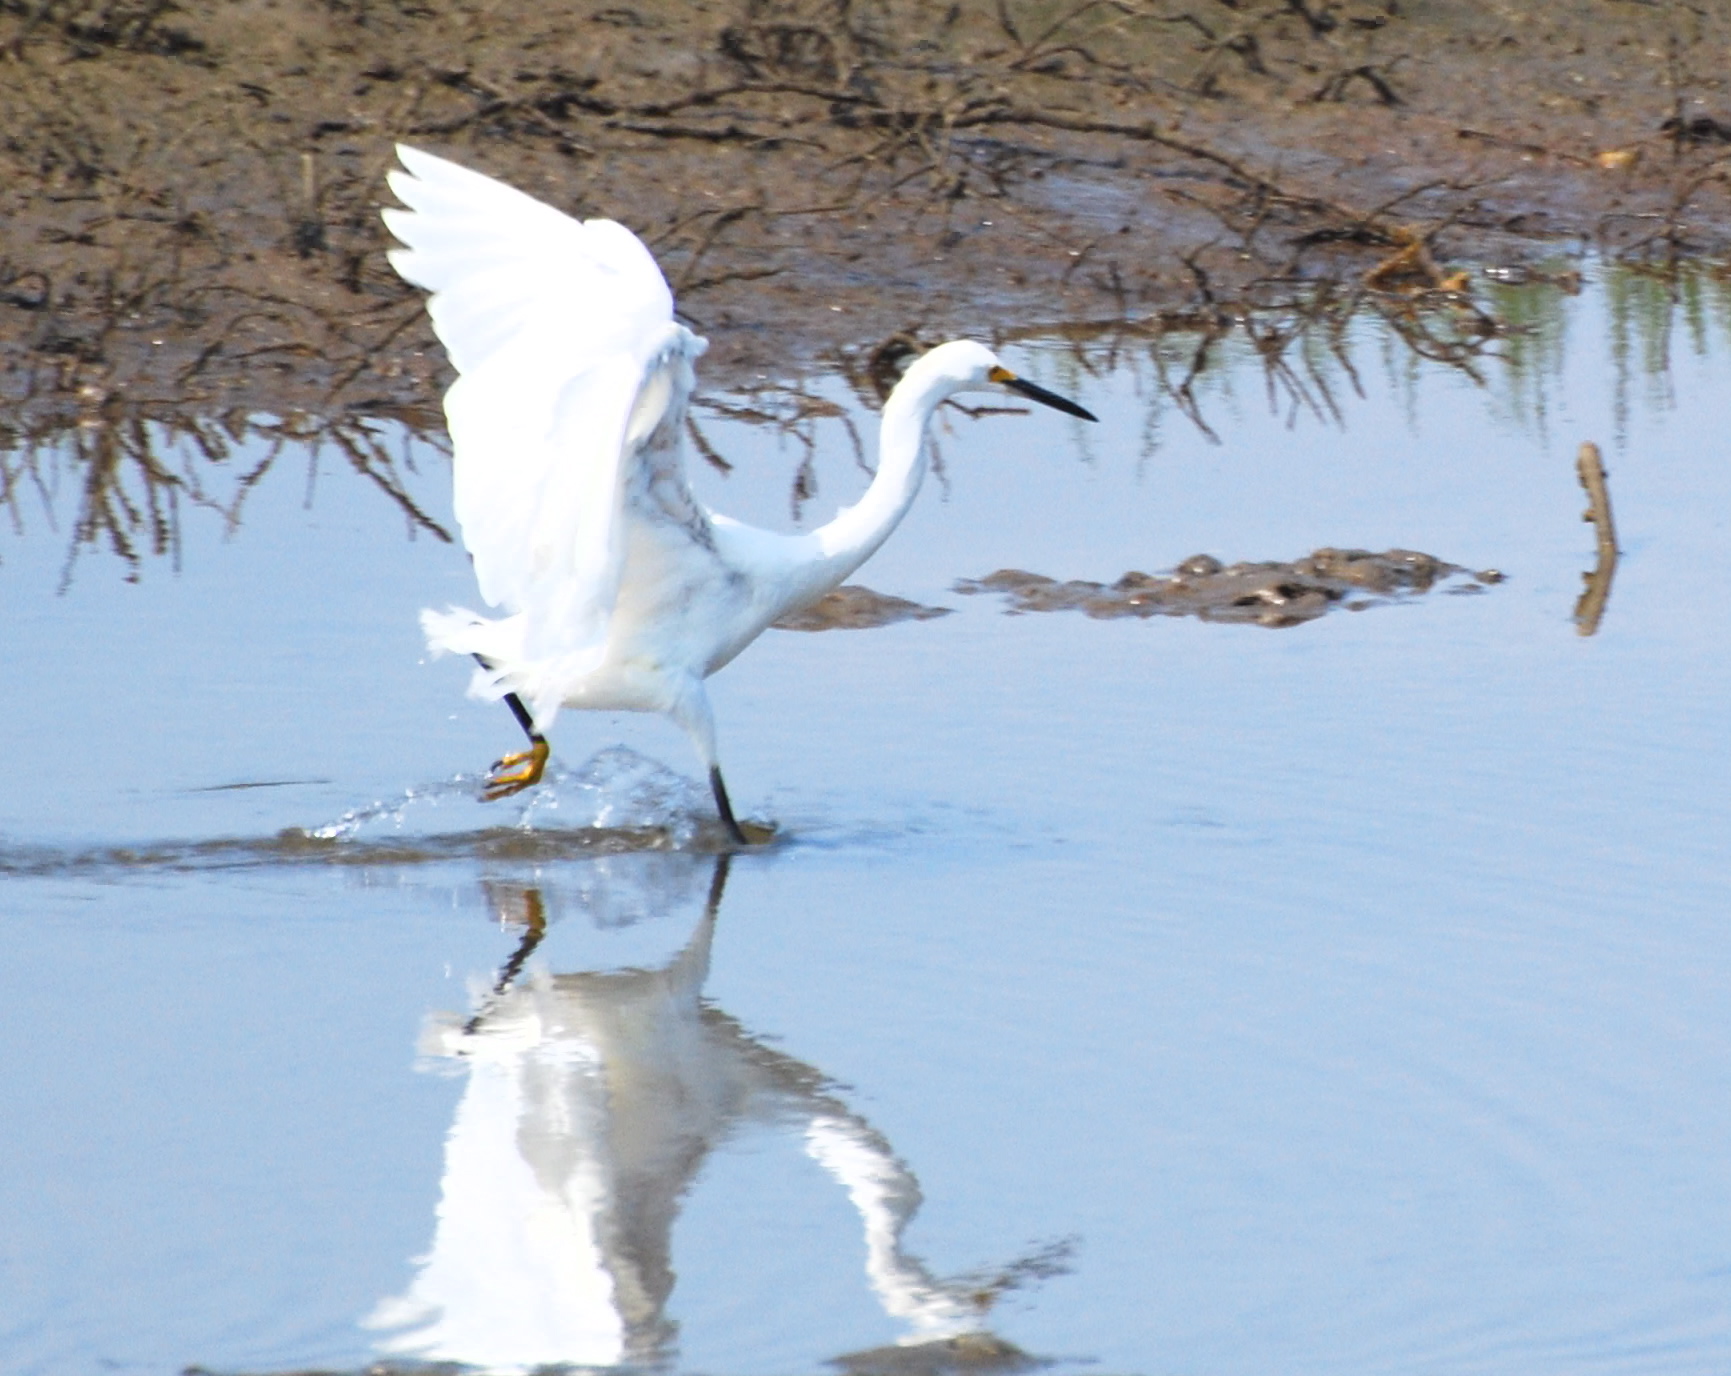 Snowy Egret on the run171325.tmp/mysterybird.JPG